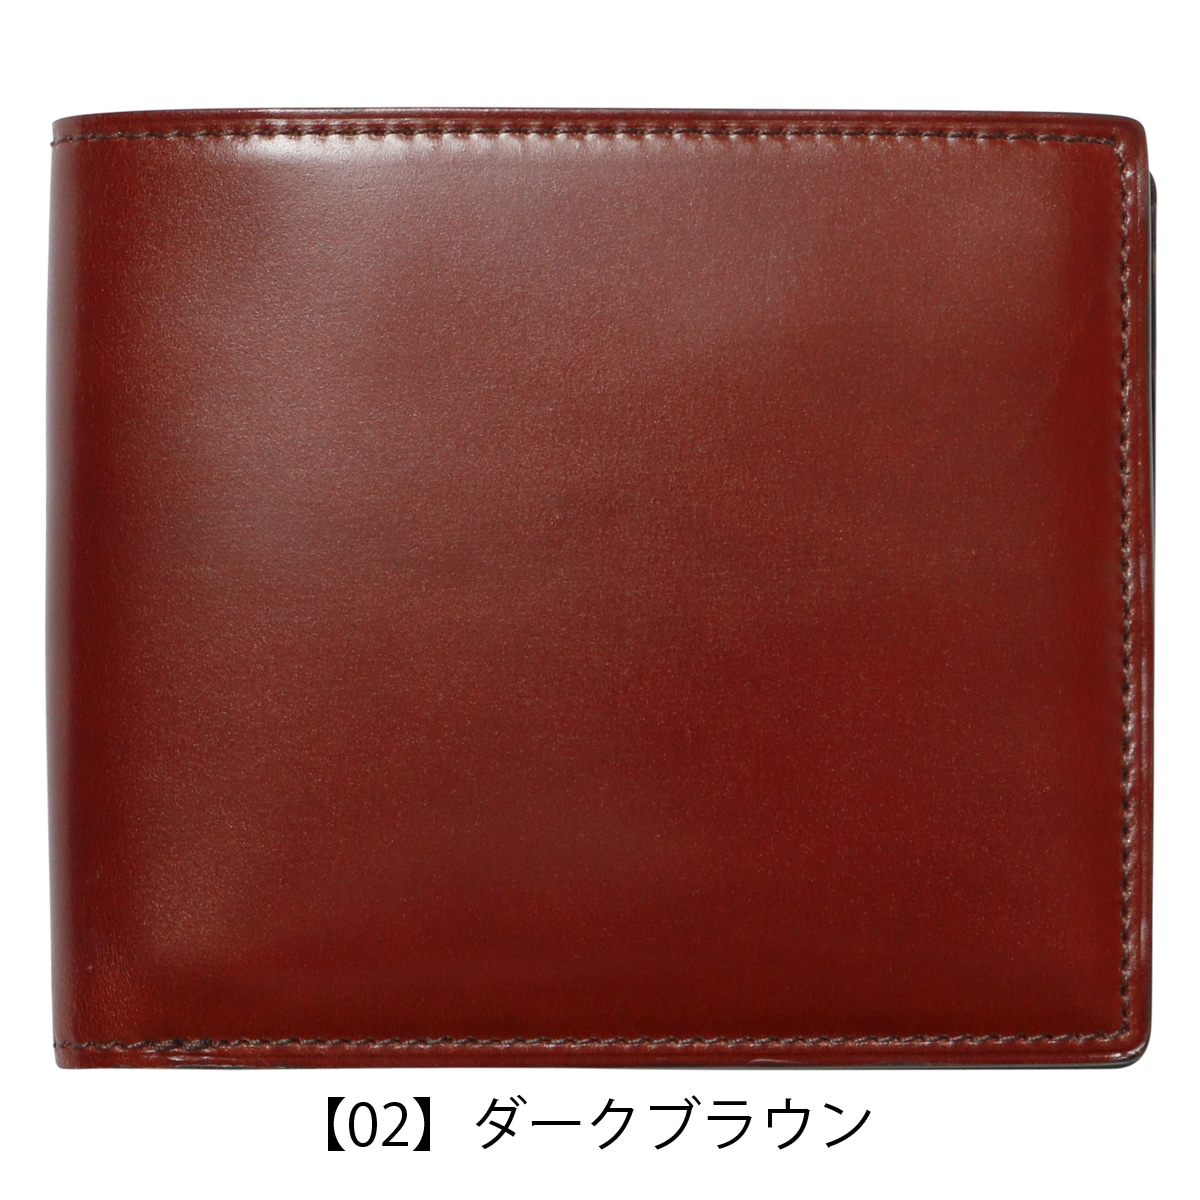 プレリー ギンザ 財布 二つ折り 本革 メンズ NP49230 日本製 